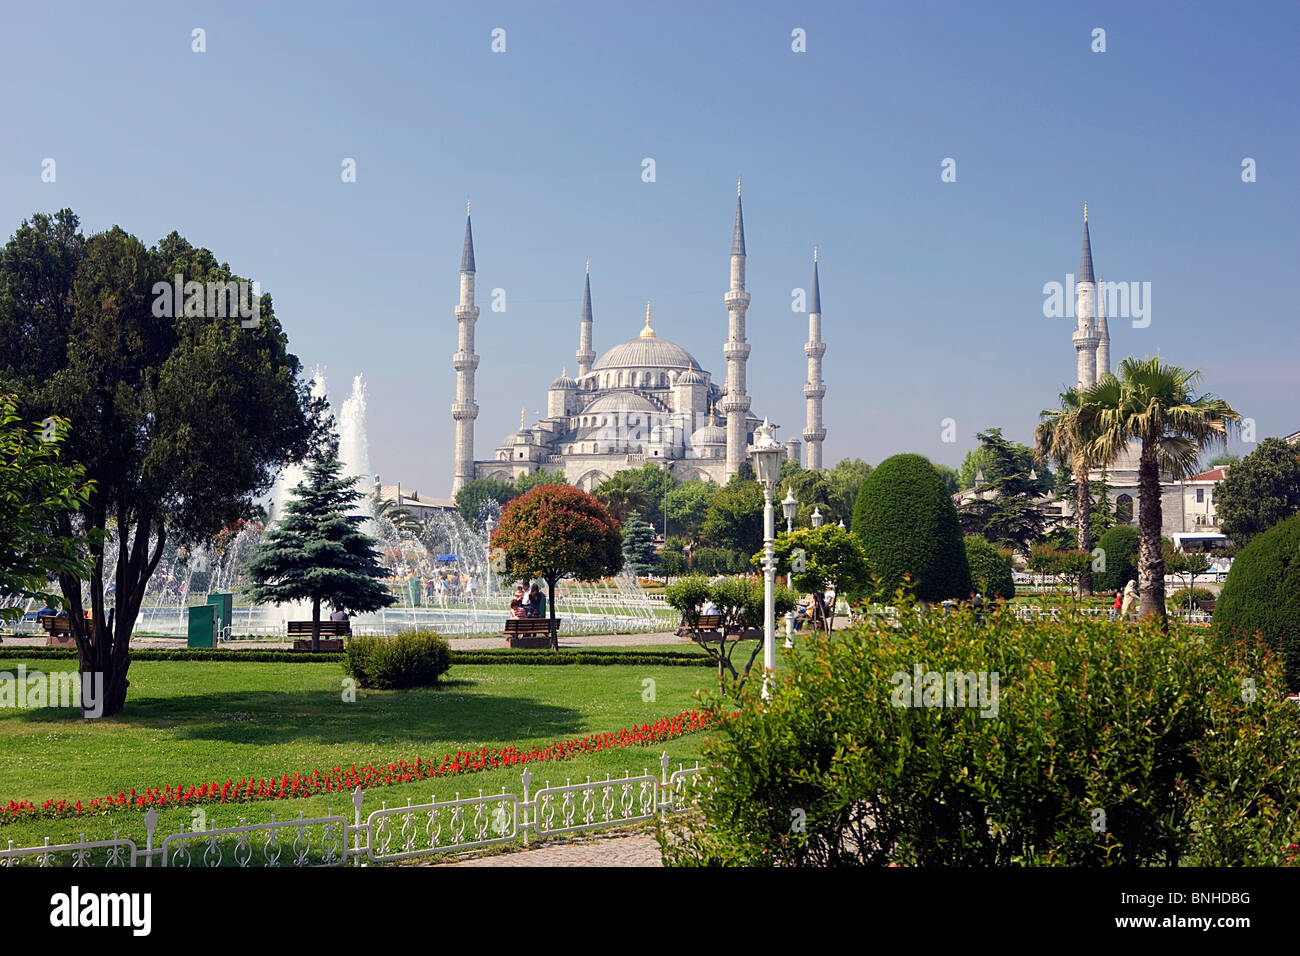 La Turchia Giugno 2008 Istanbul city Moschea Blu Sultan Ahmed Mosque parco giardino verde minareti Islam Foto Stock